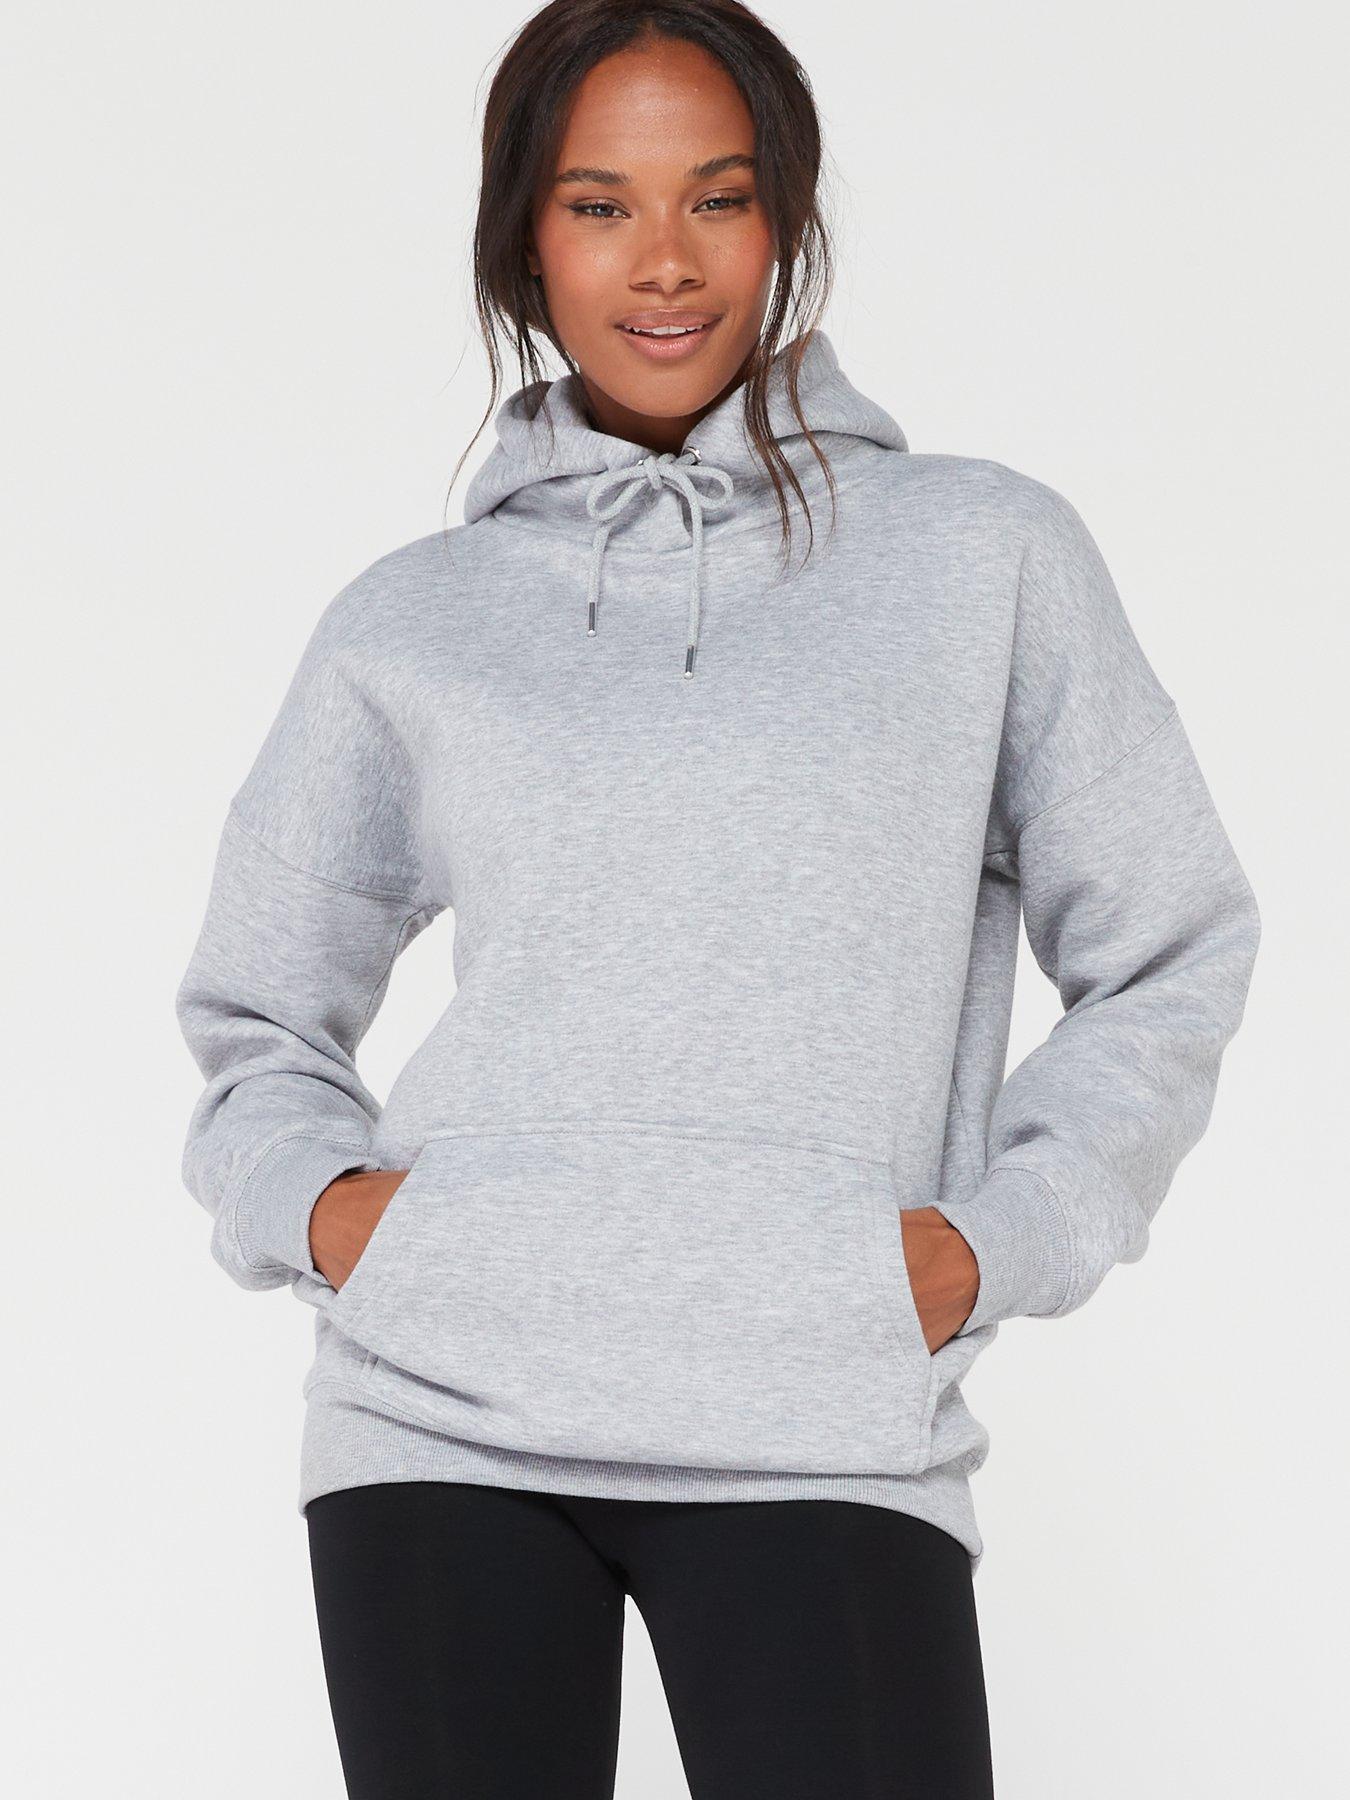 Dreams & Co. Women's Plus Size Petite Long Hooded Fleece